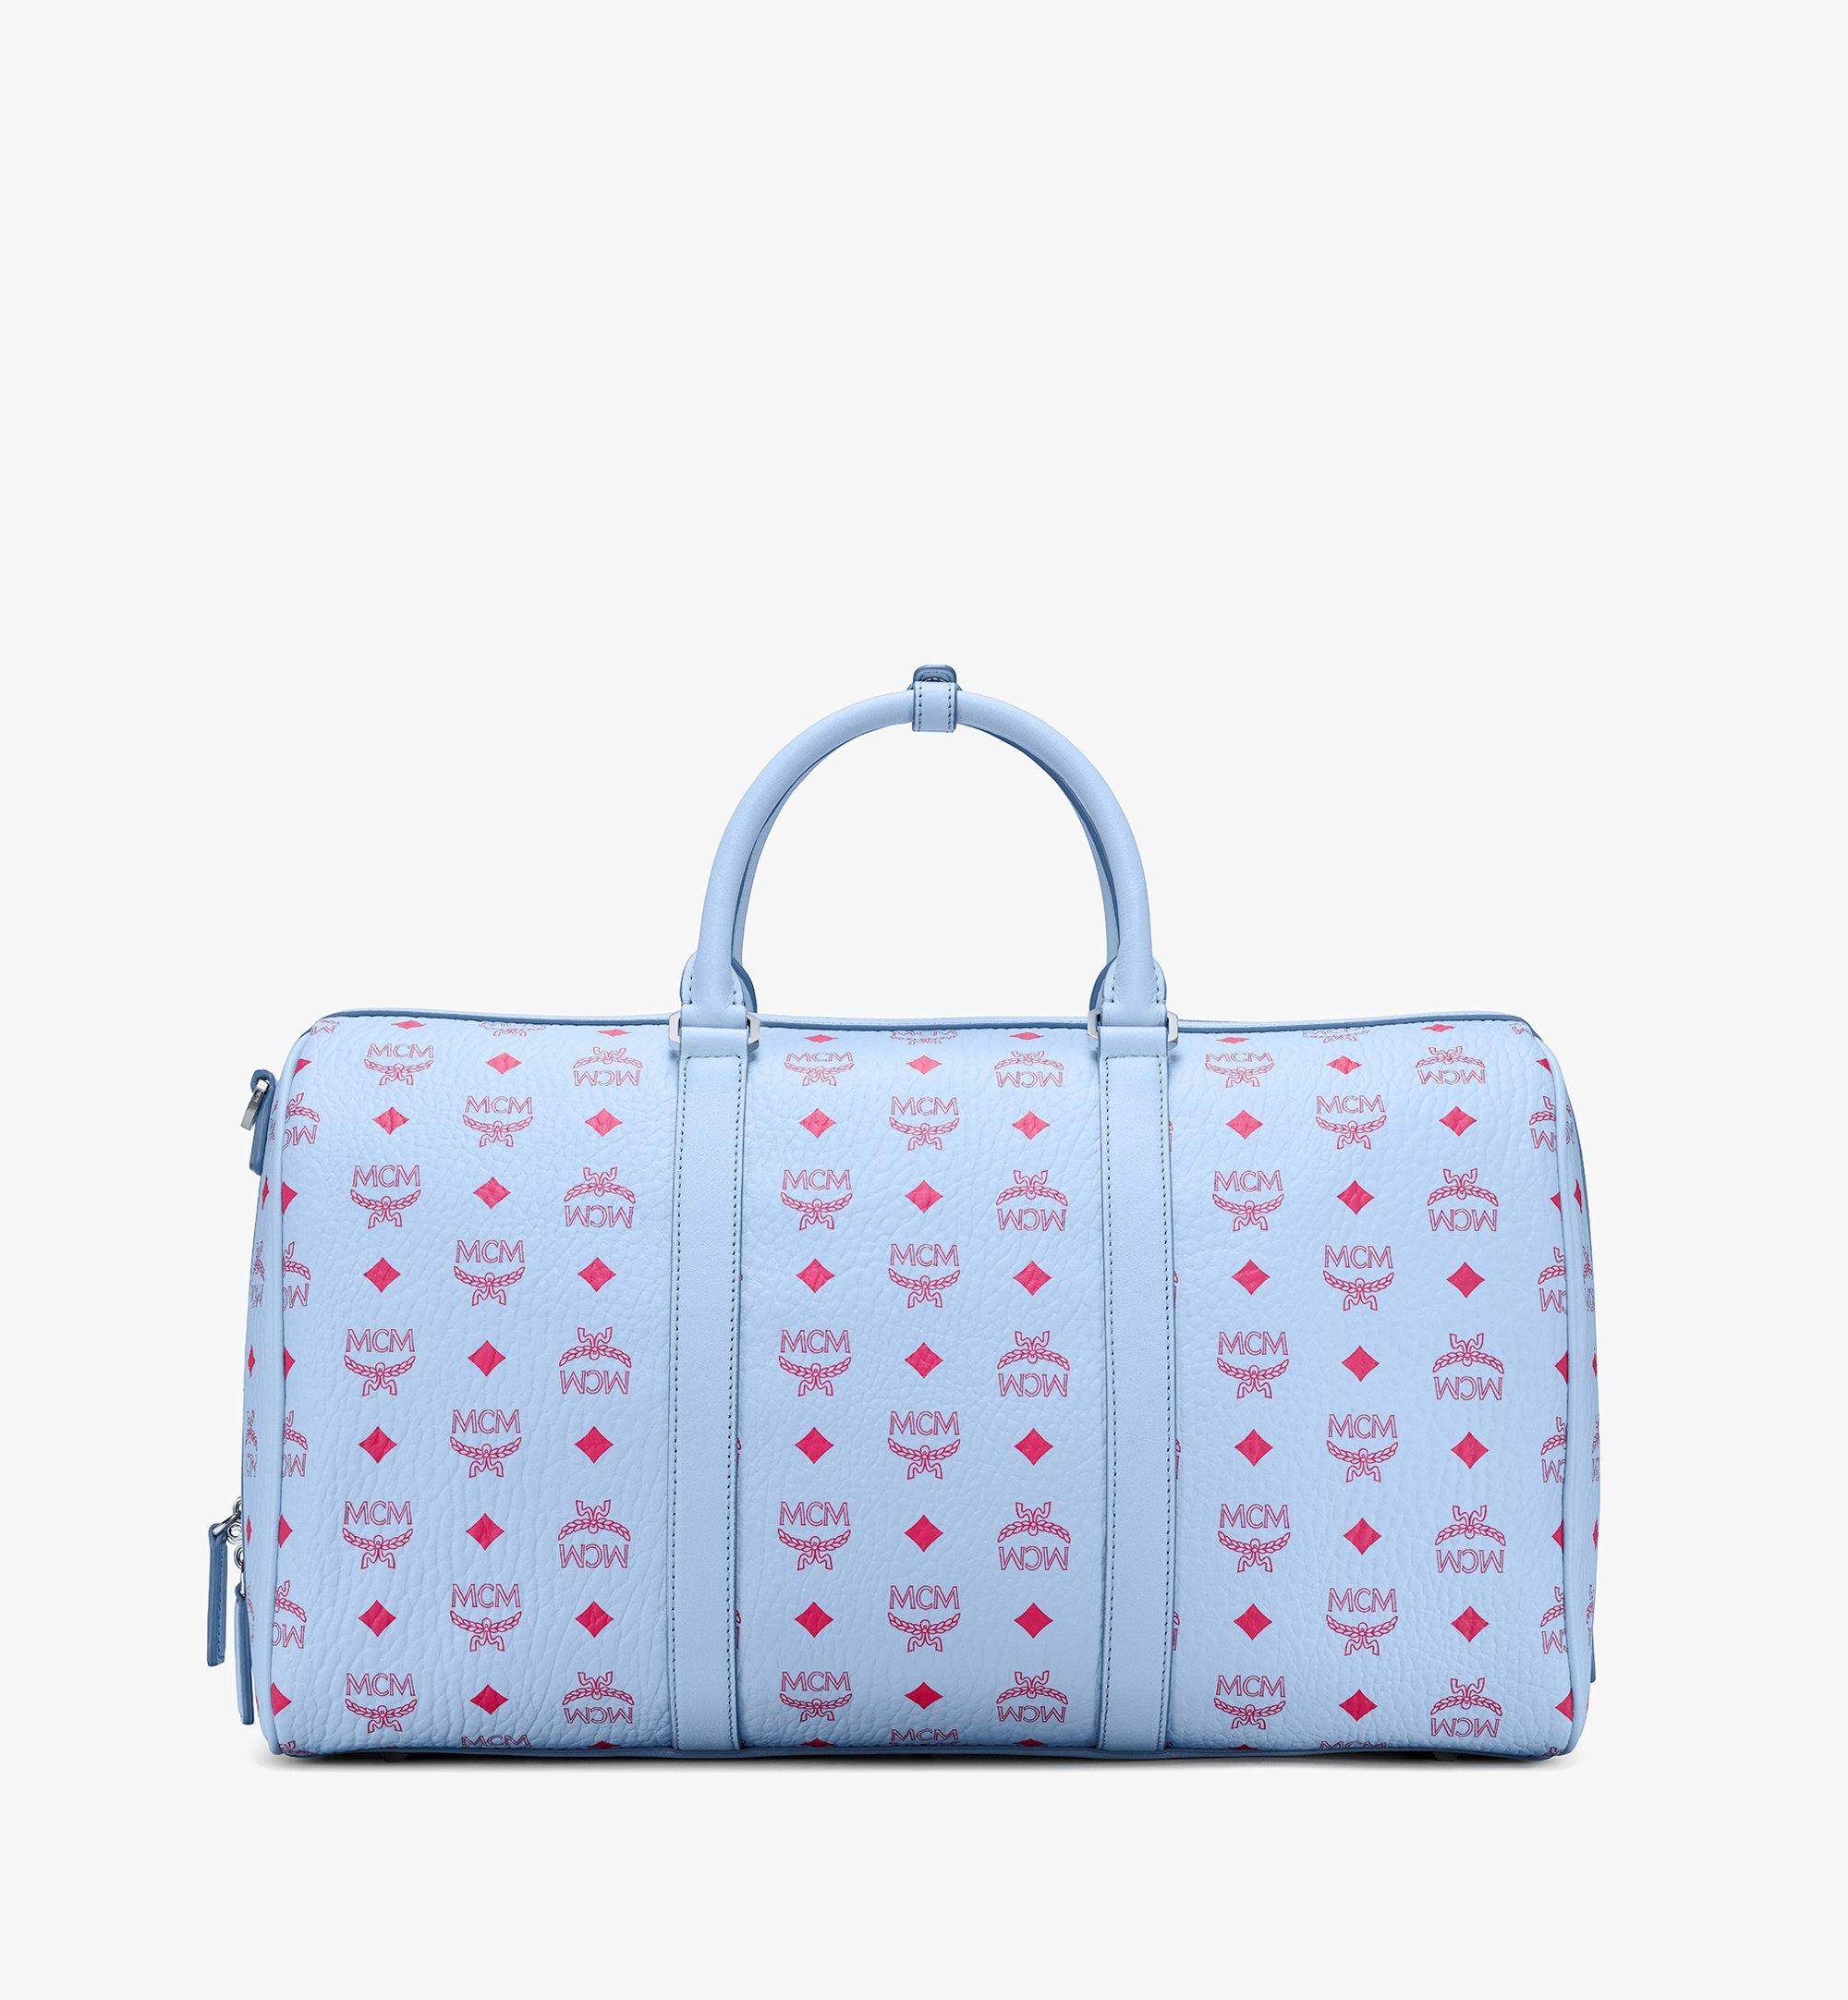 45 Cm / 17.7 Traveler Weekender Bag in Visetos Blue